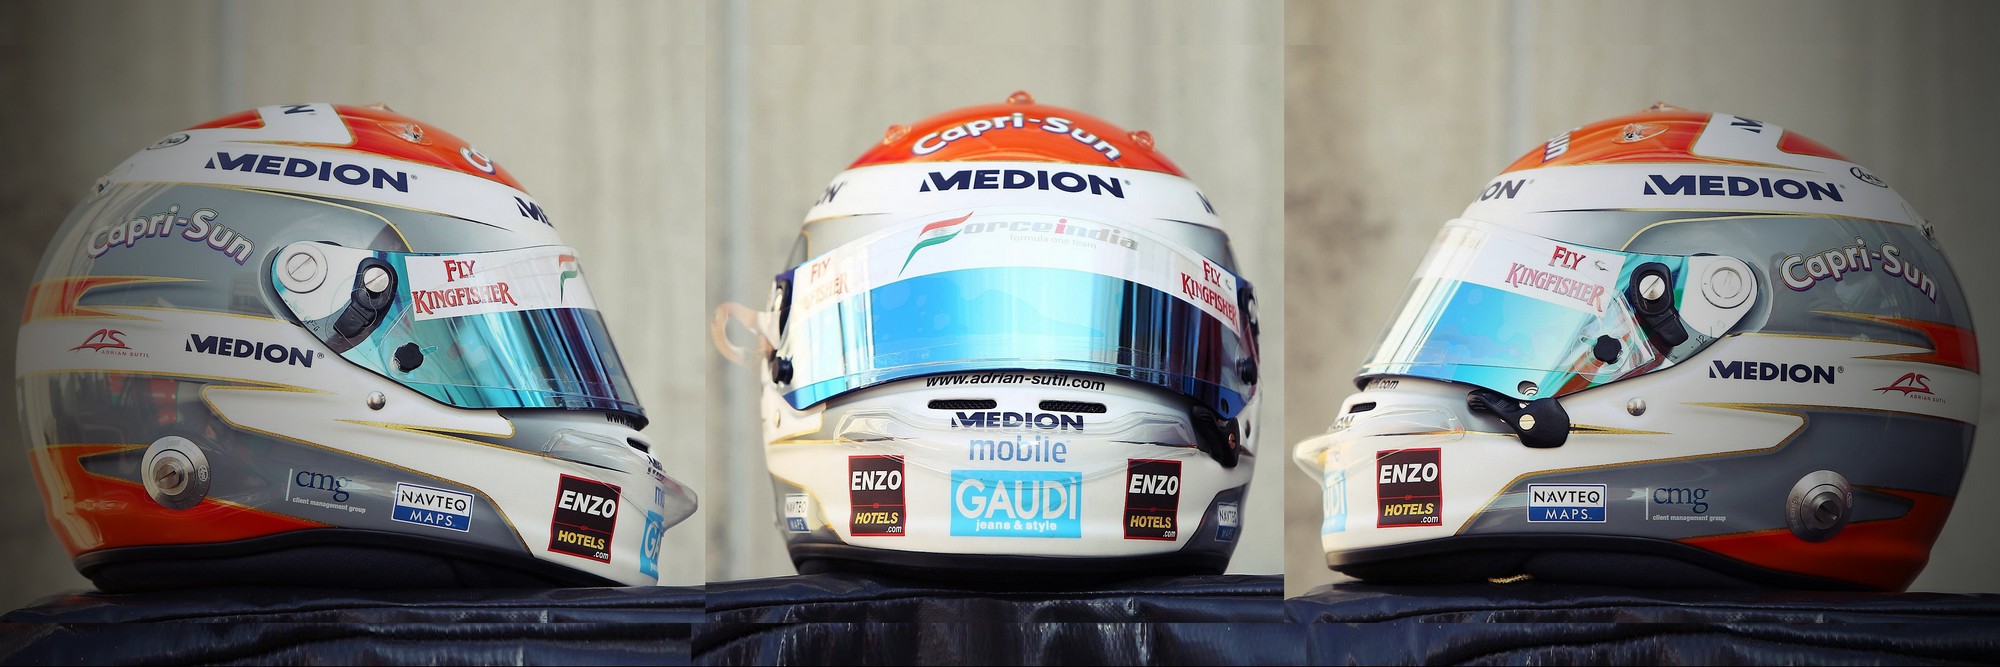 Шлем Адриана Сутиля на Гран-При Испании 2011 года | 2011 Spanish Grand Prix helmet of Adrian Sutil